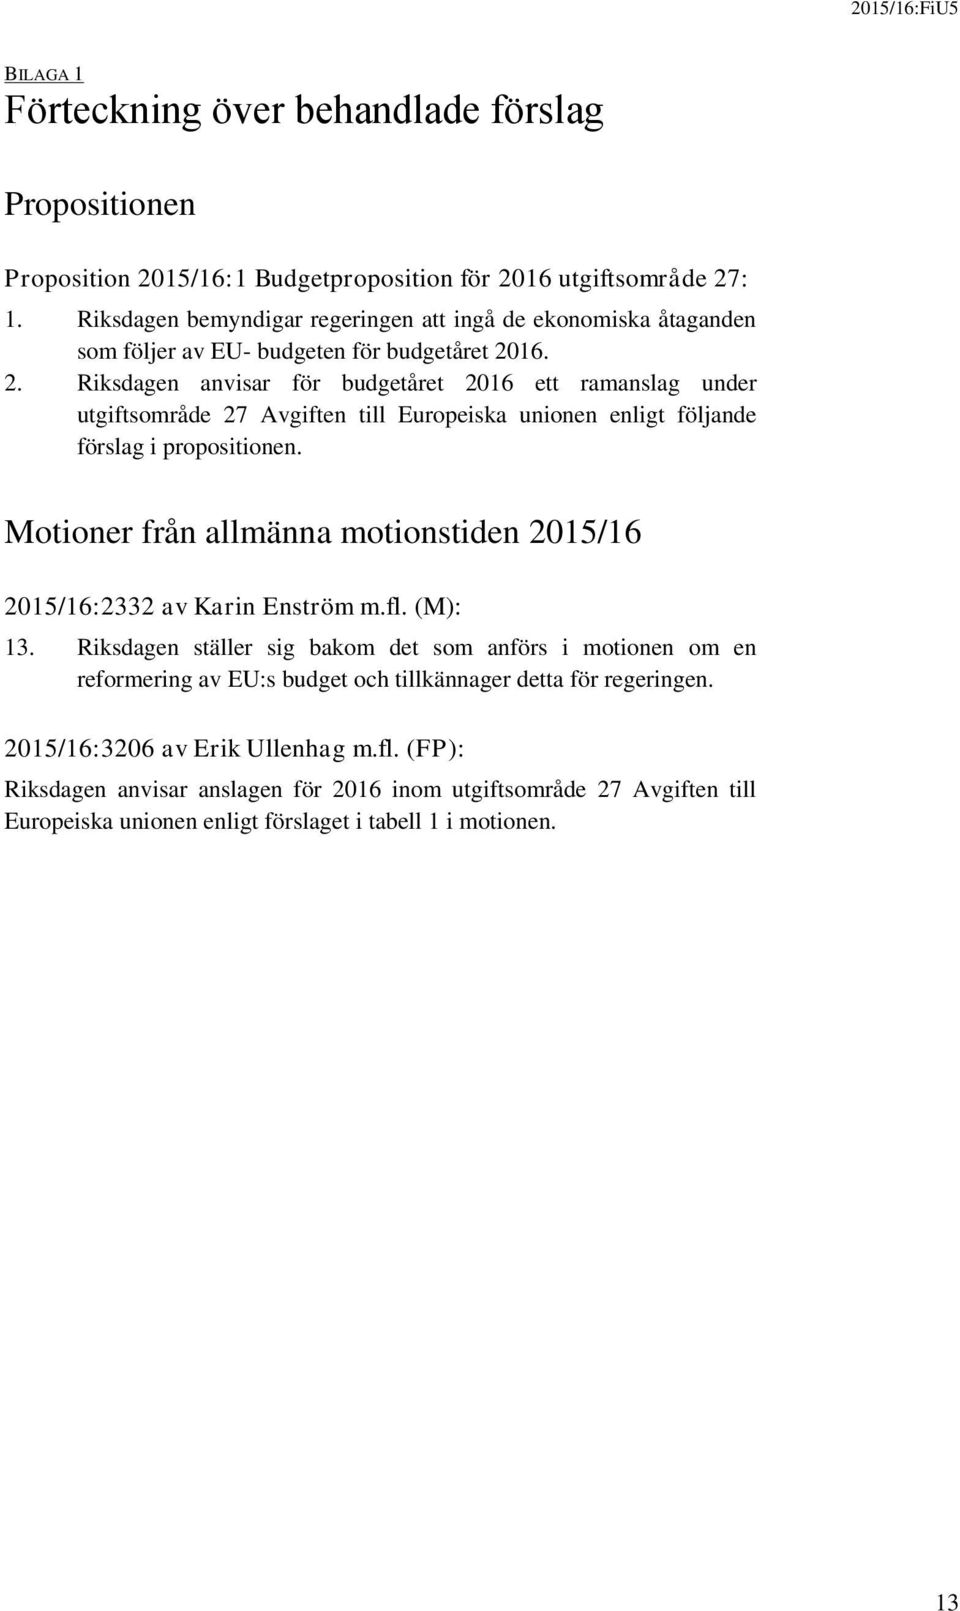 16. 2. Riksdagen anvisar för budgetåret 2016 ett ramanslag under utgiftsområde 27 Avgiften till Europeiska unionen enligt följande förslag i propositionen.